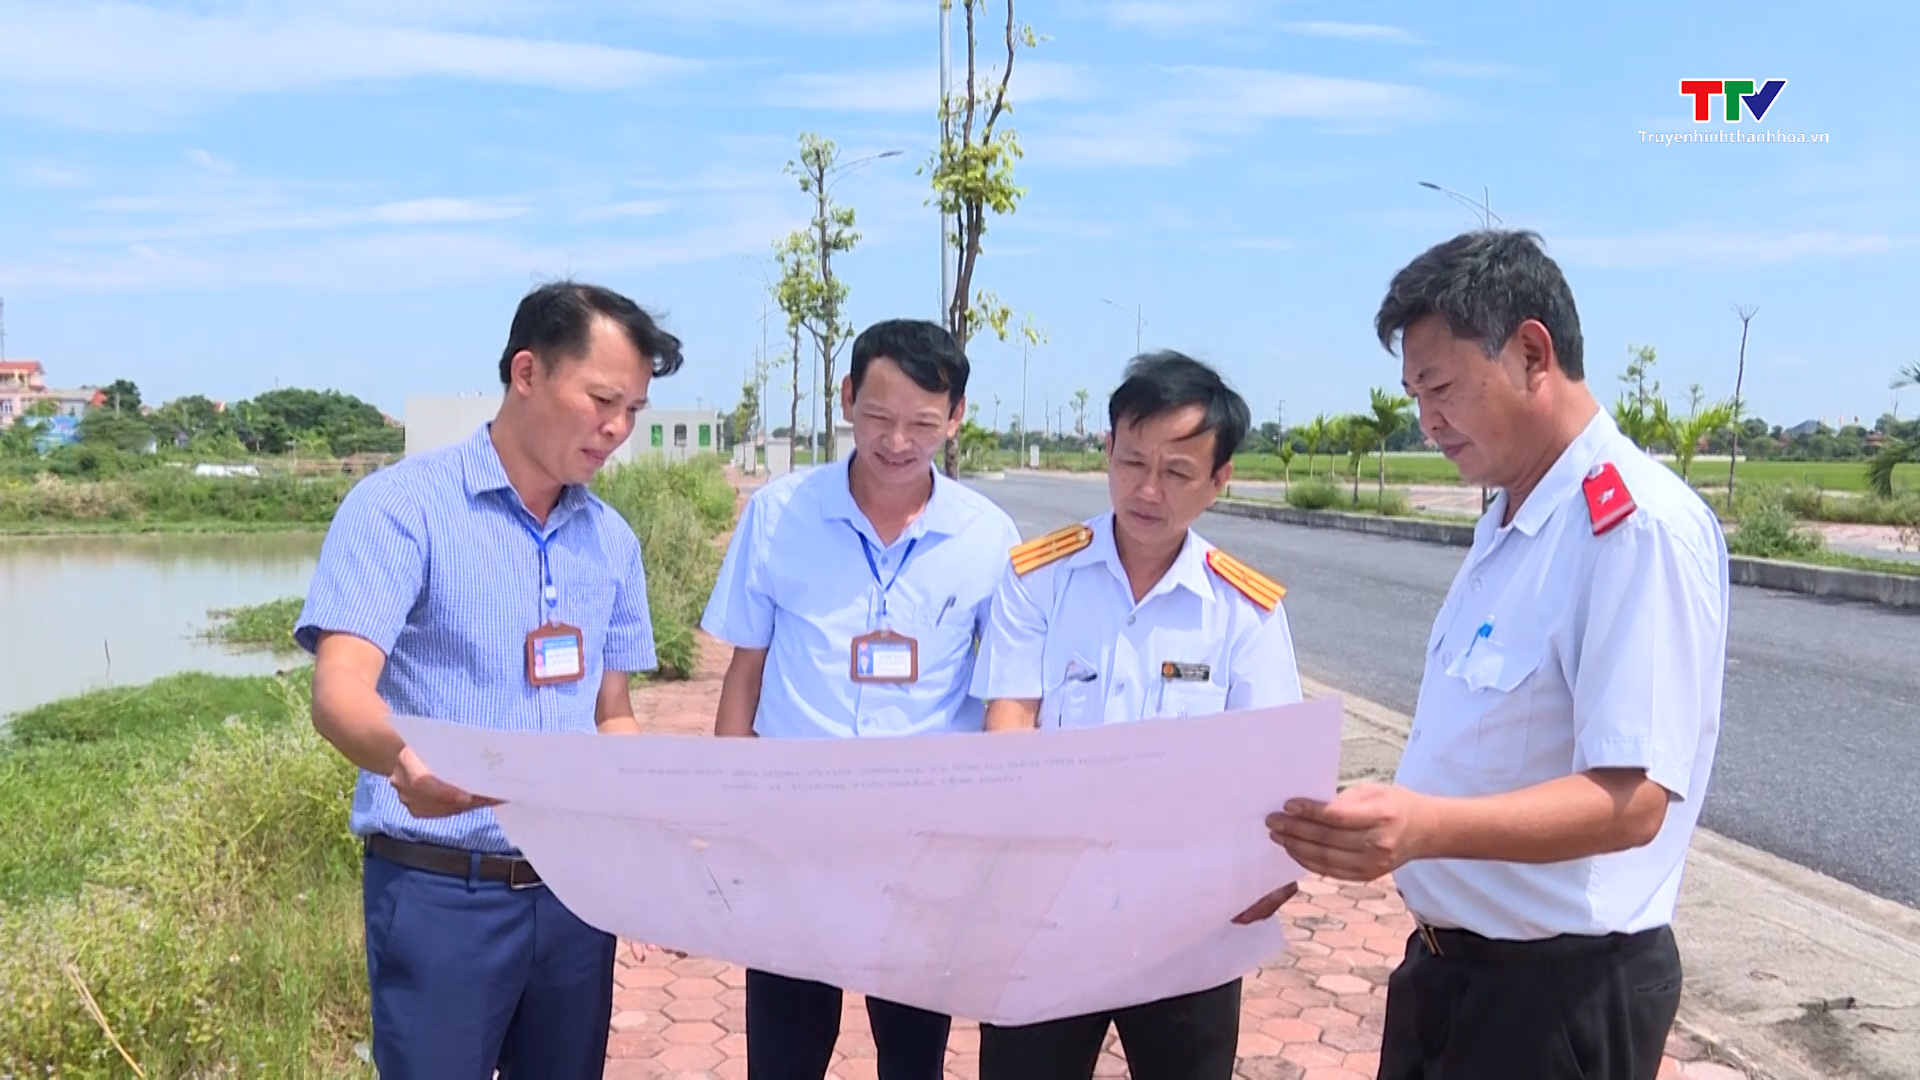 Huyện Triệu Sơn tăng cường công tác thanh tra, giải quyết khiếu nại, tố cáo, ổn định tình hình  - Ảnh 7.